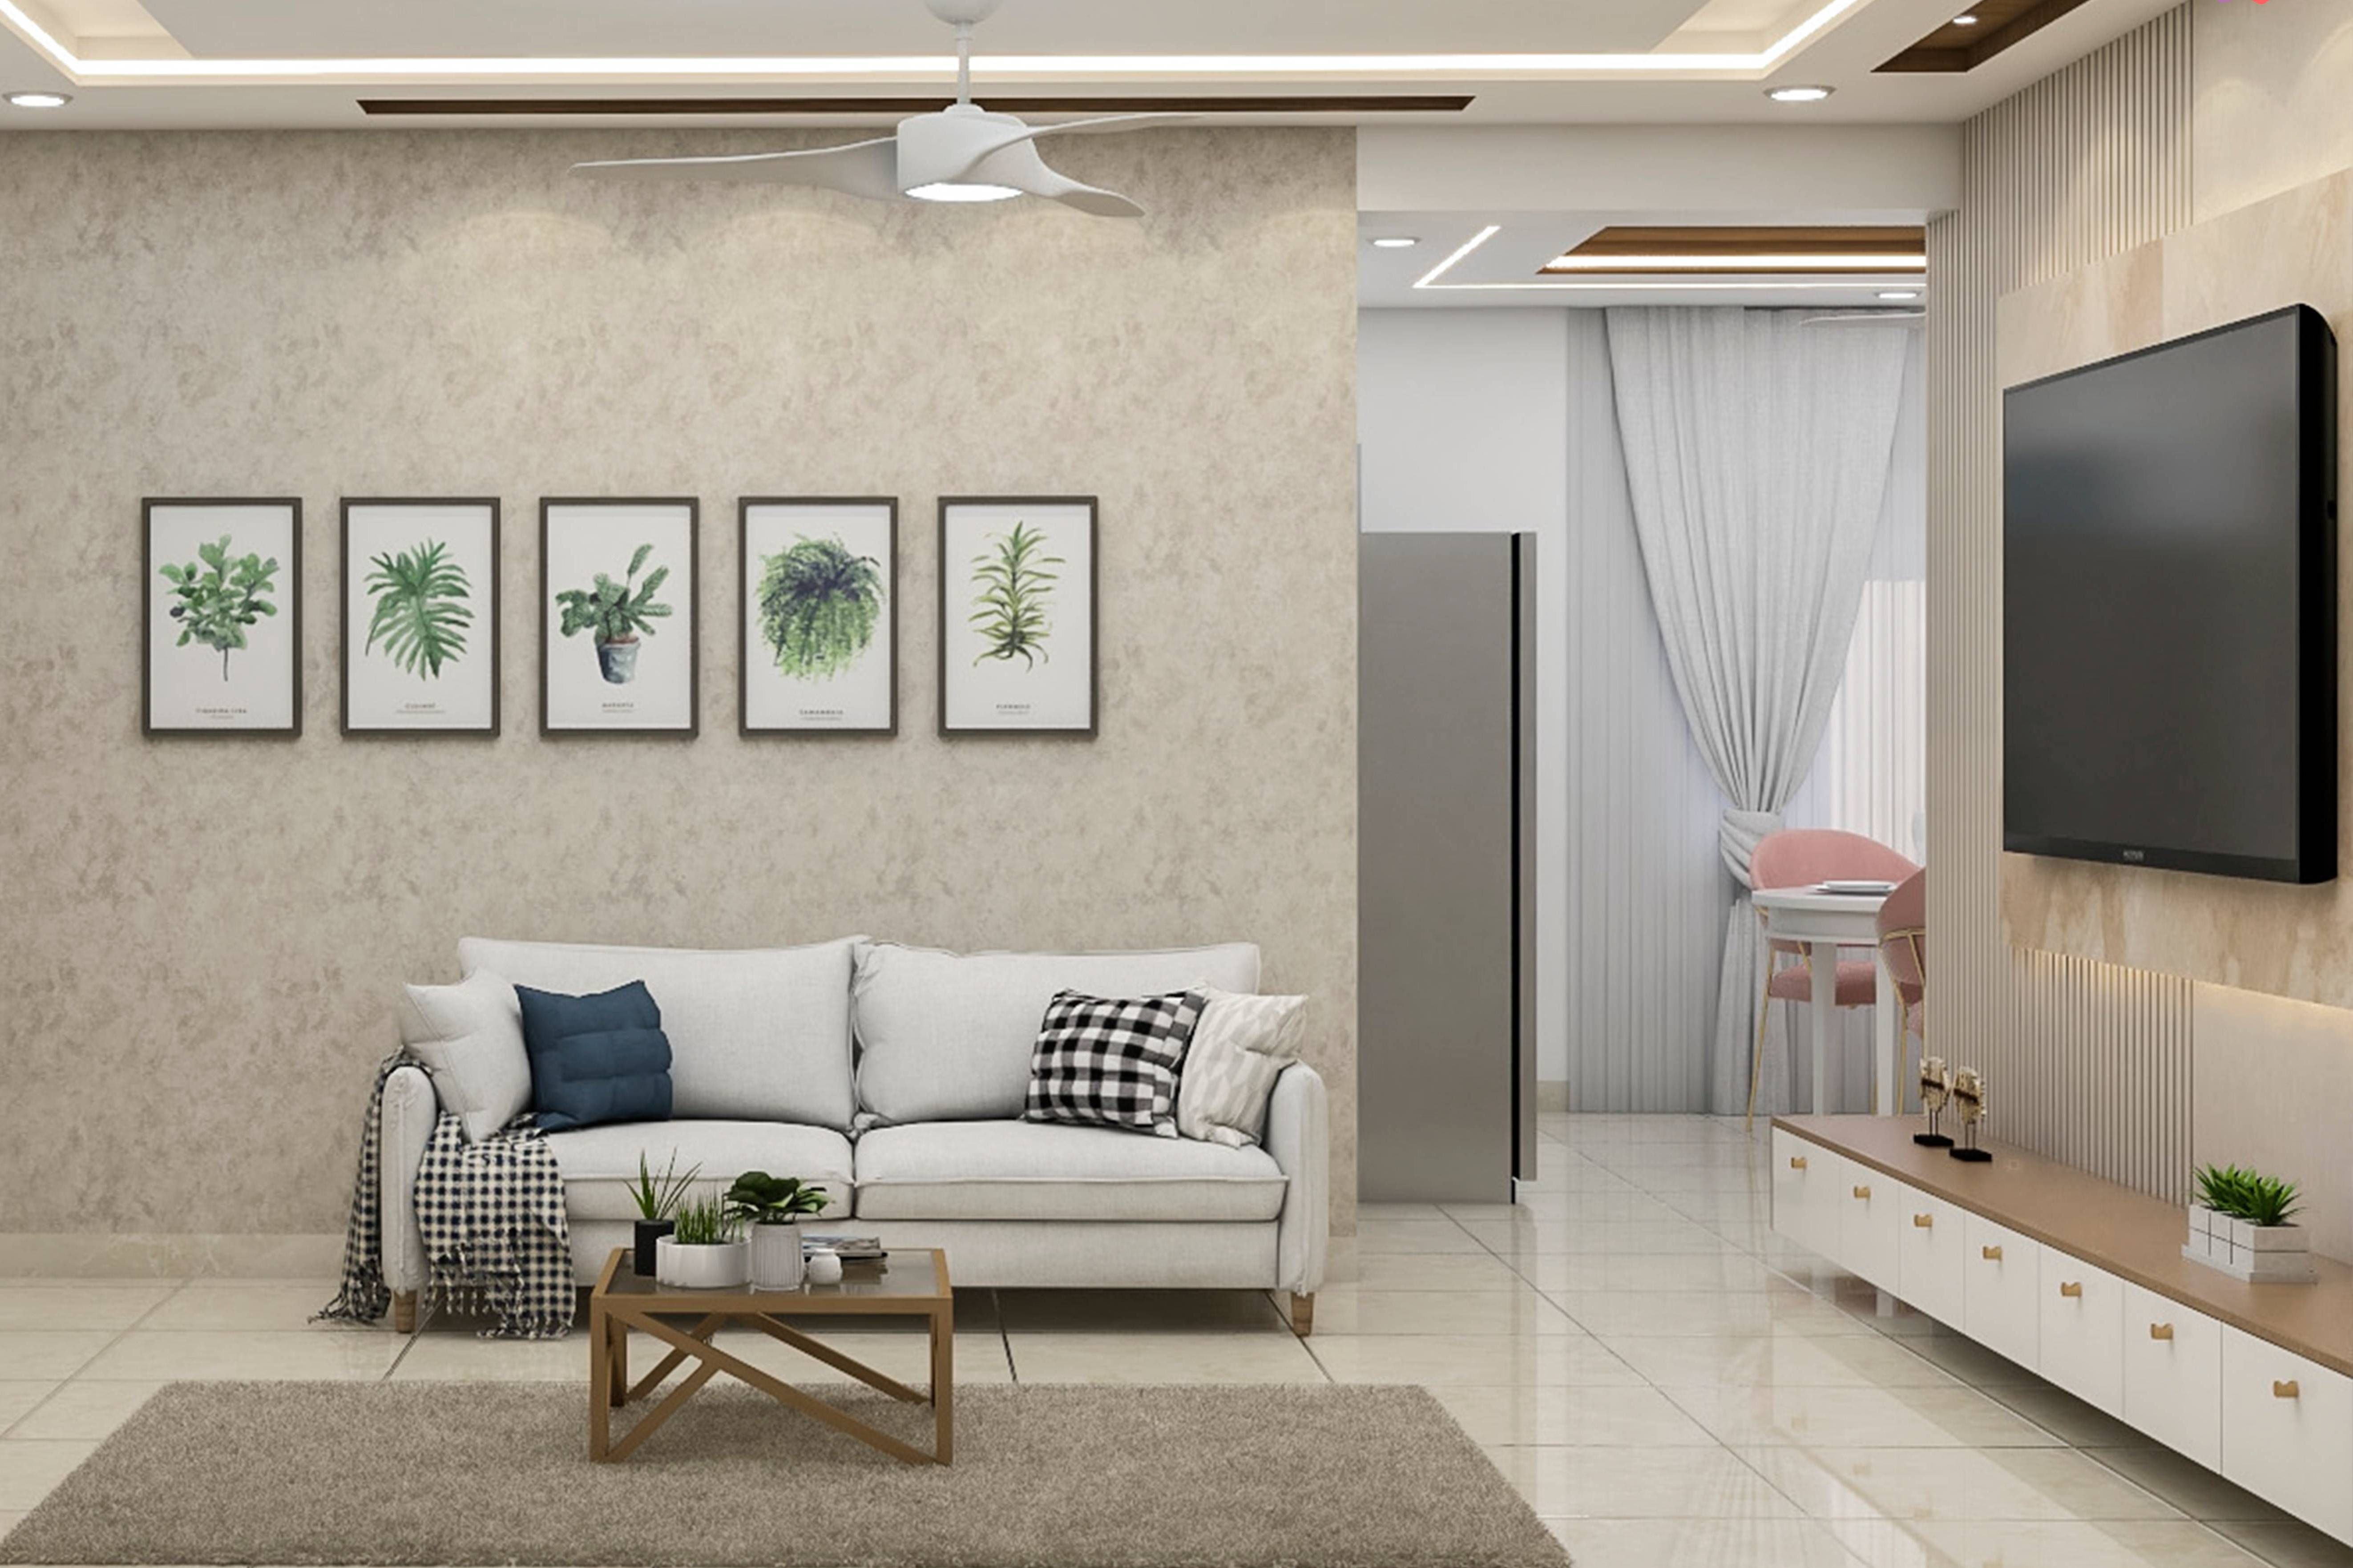 Contemporary Spacious Living Room Design With White Sofa